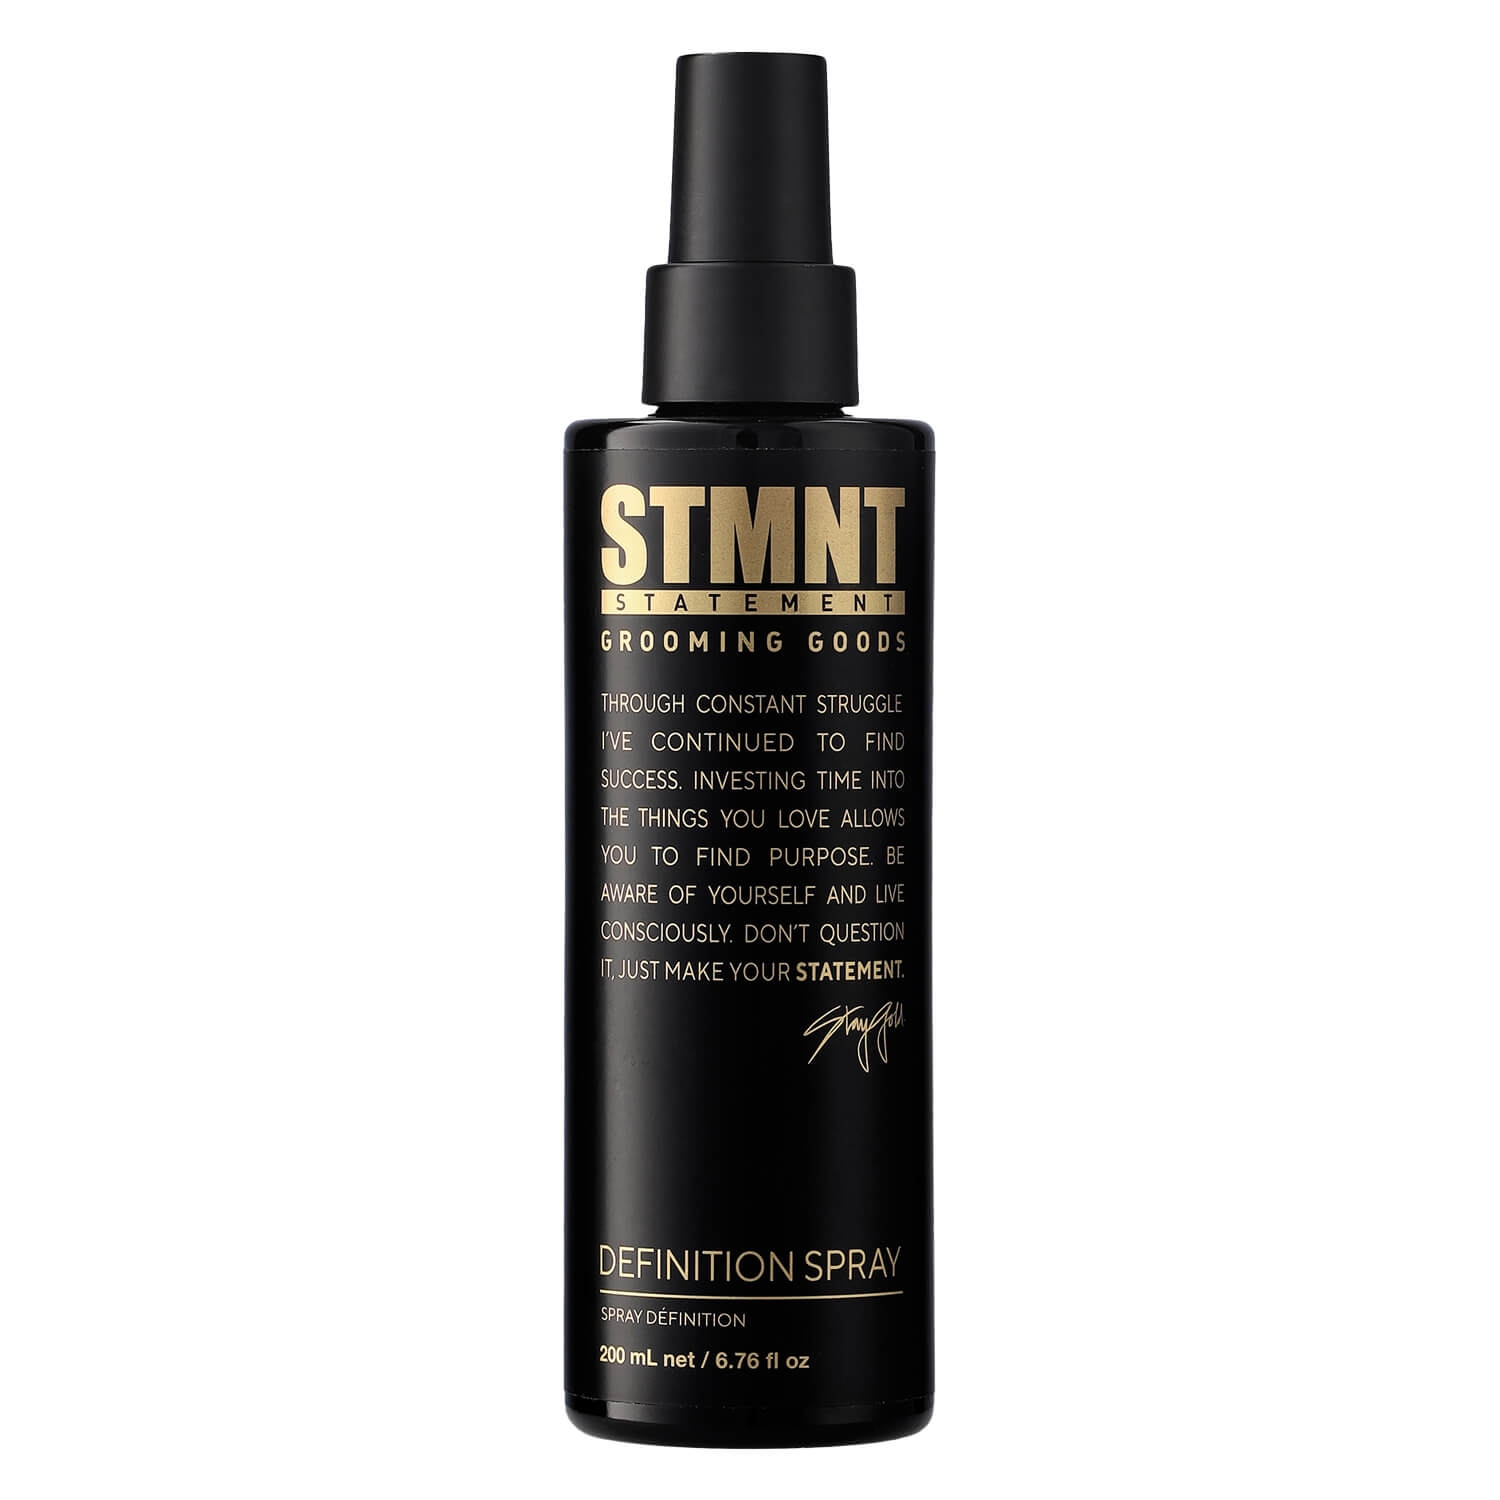 Produktbild von STMNT - Definition Spray